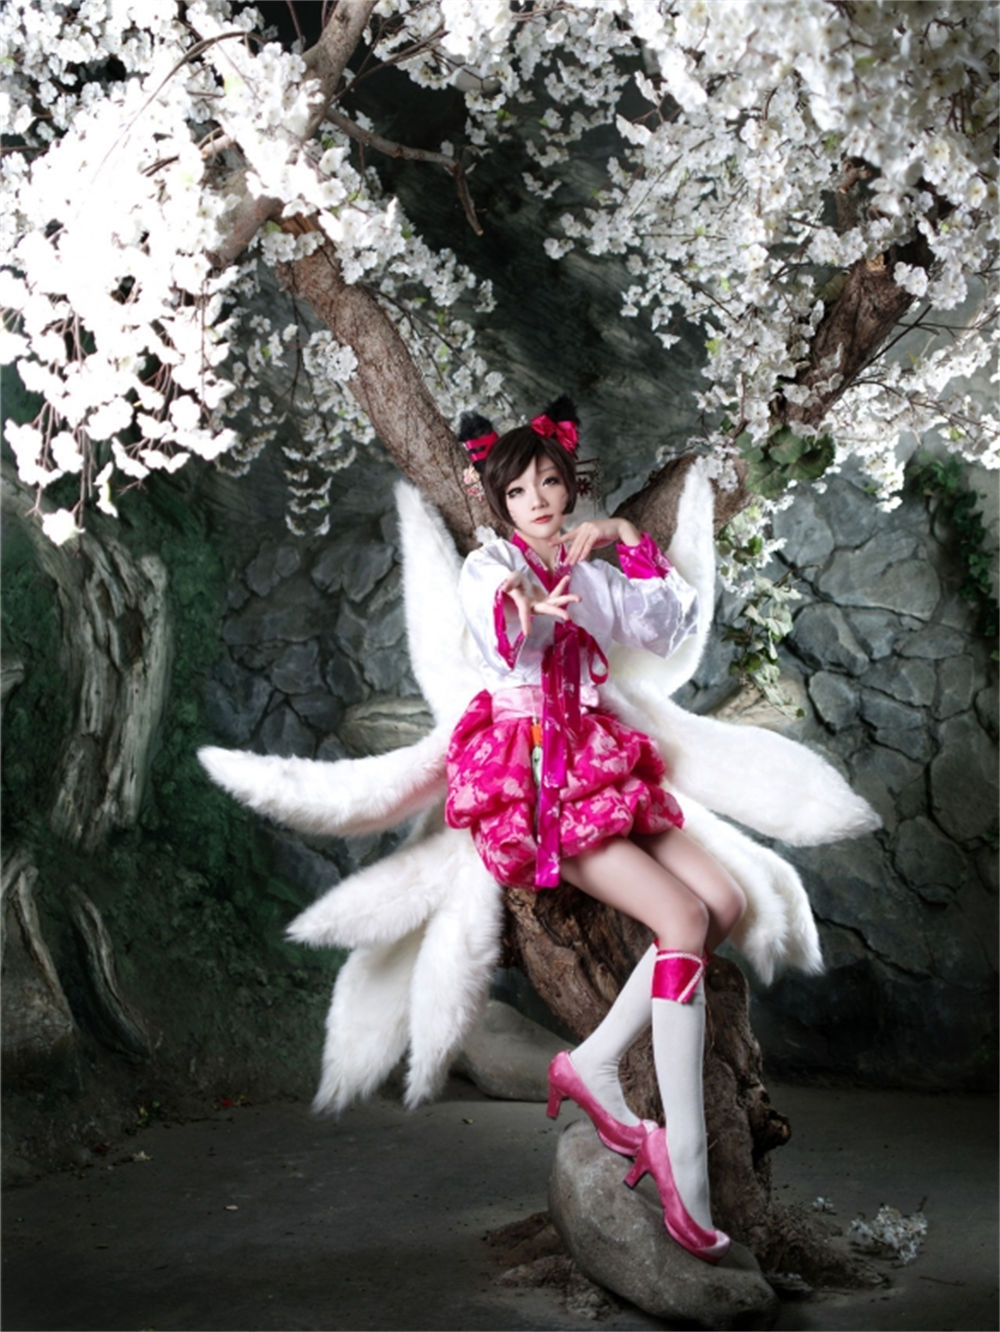 韩国知名cosplay模特@aza_miyuko美图 姿势灵活多变 小Dva太可爱了！图片